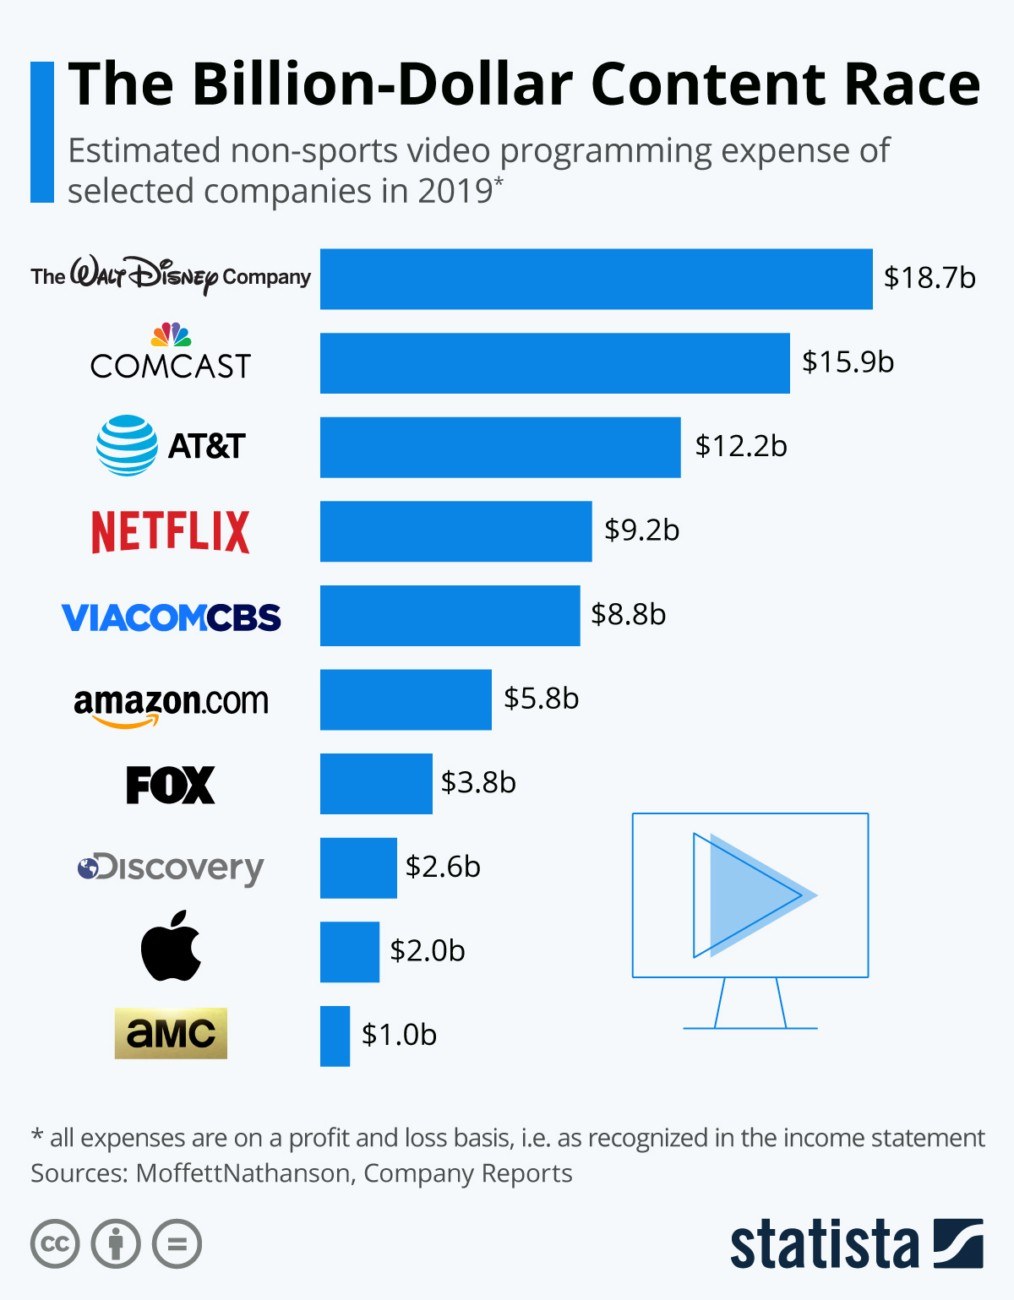 Гонка за контентом на миллиарды долларов: расчетные расходы на неспортивные видеопрограммы крупнейших игроков рынка в 2019 году.